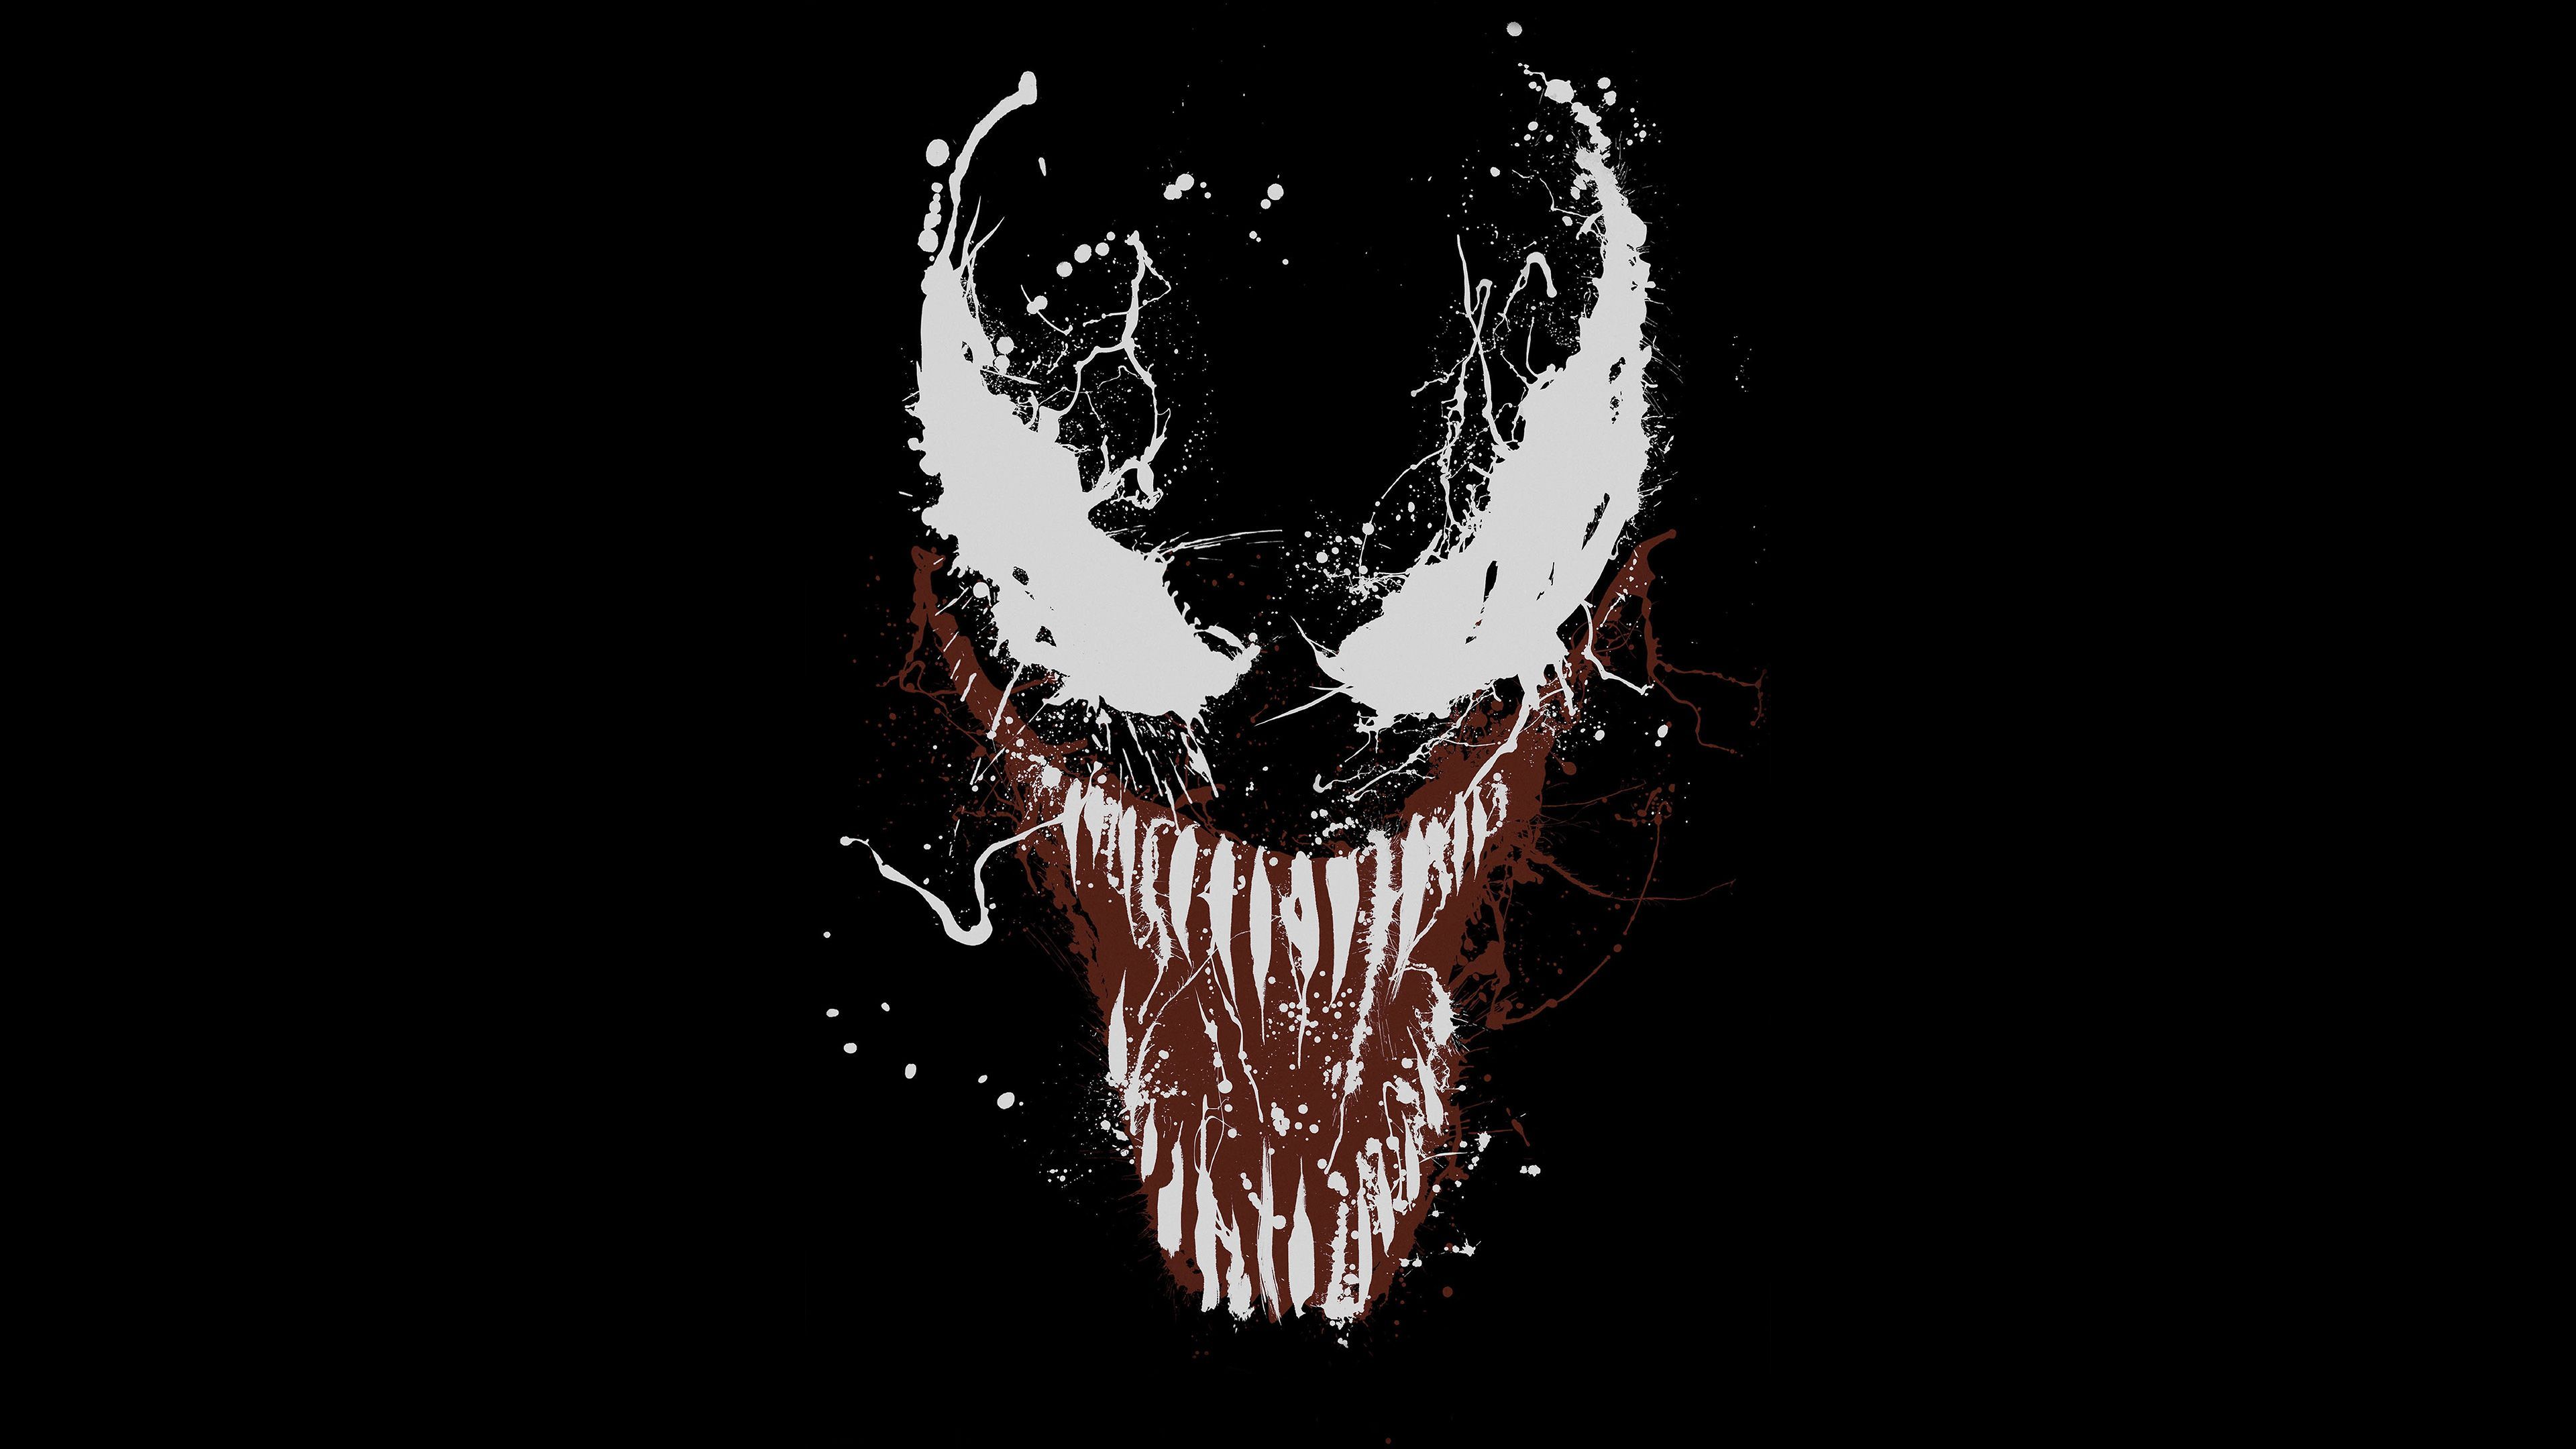 Venom Movie Poster 2018 fondos de pantalla de Venom, fondos de pantalla de películas de Venom